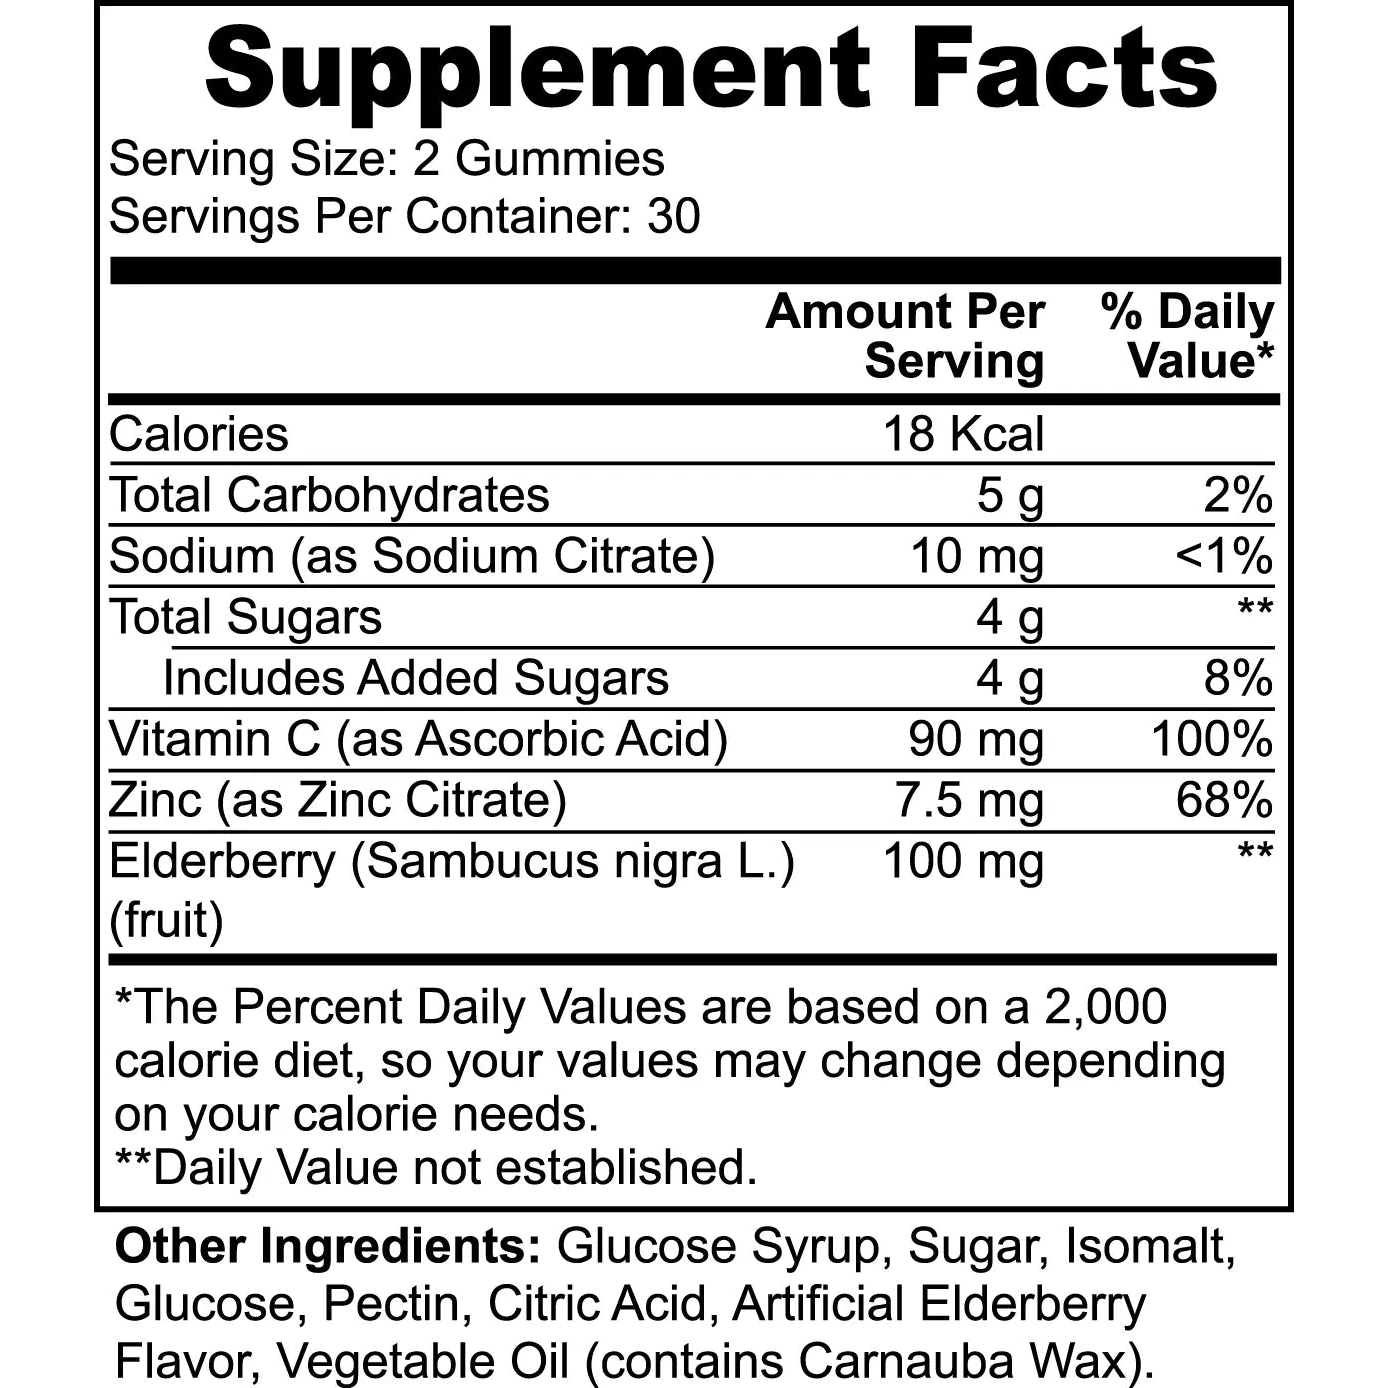 Elderberry & Vitamin C indexvitamins.com